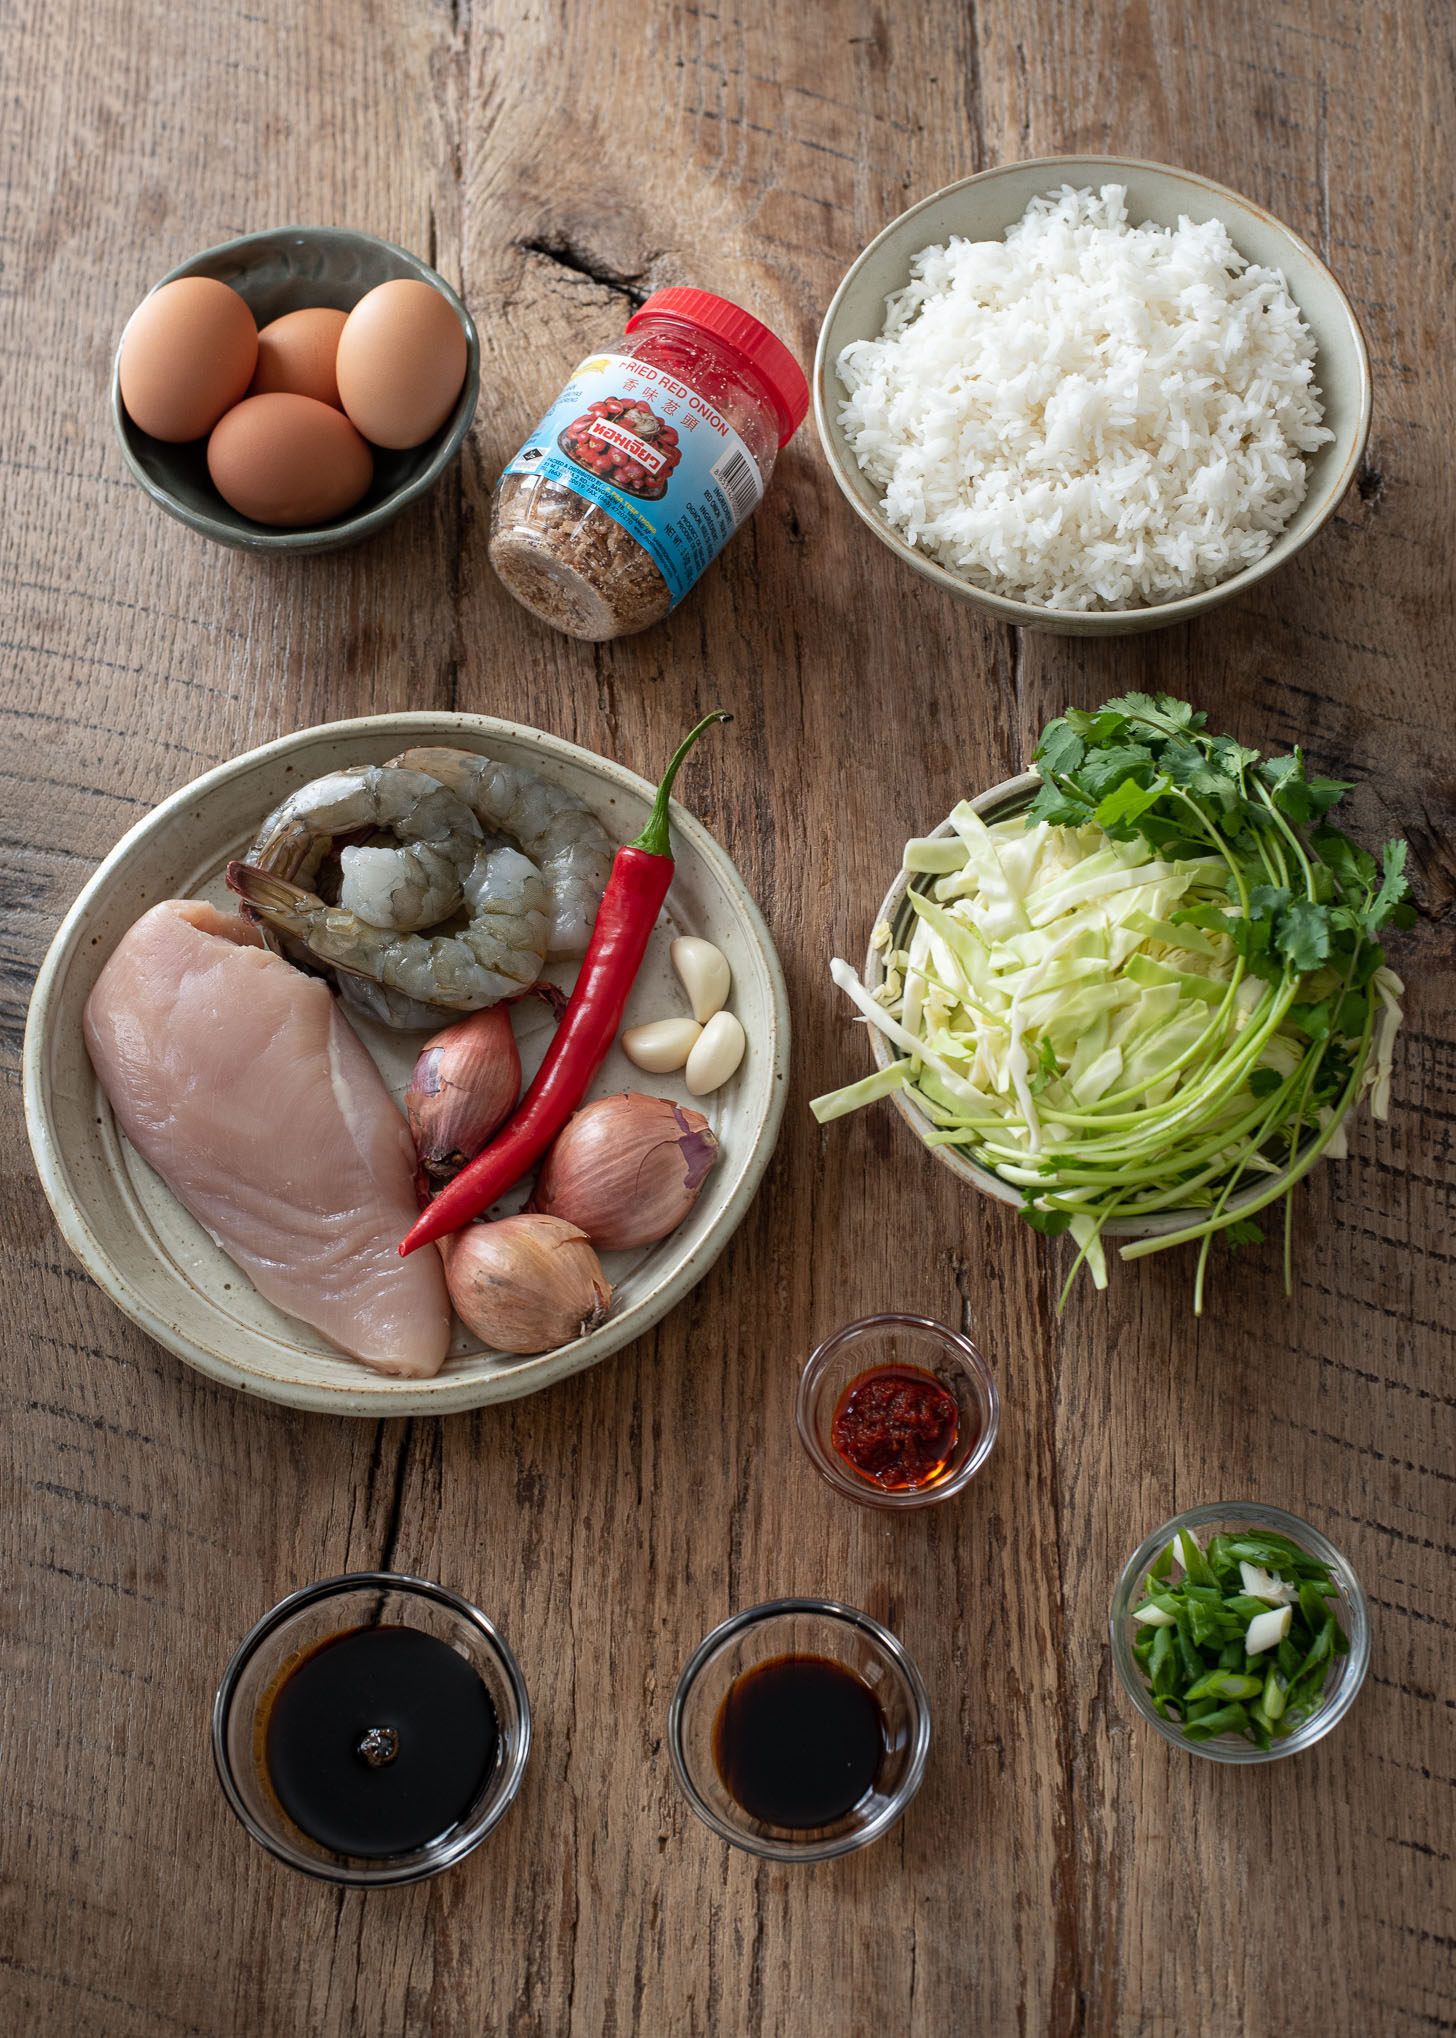 Ingredients for making Nasi Goreng, Indonesian fried rice.